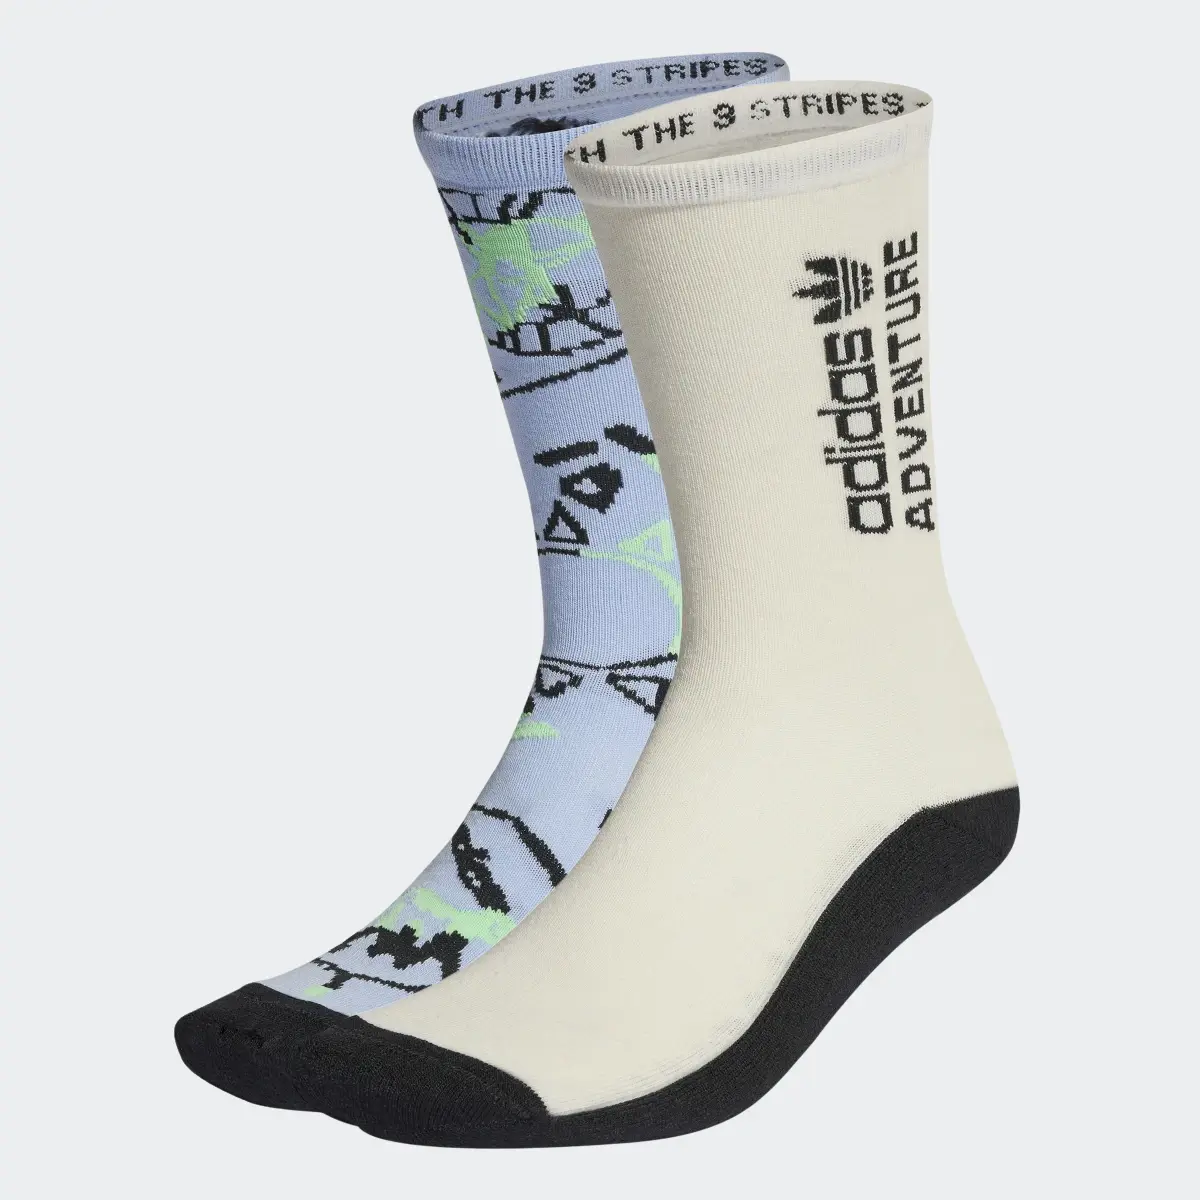 Adidas Adventure Socks 2 Pairs. 2